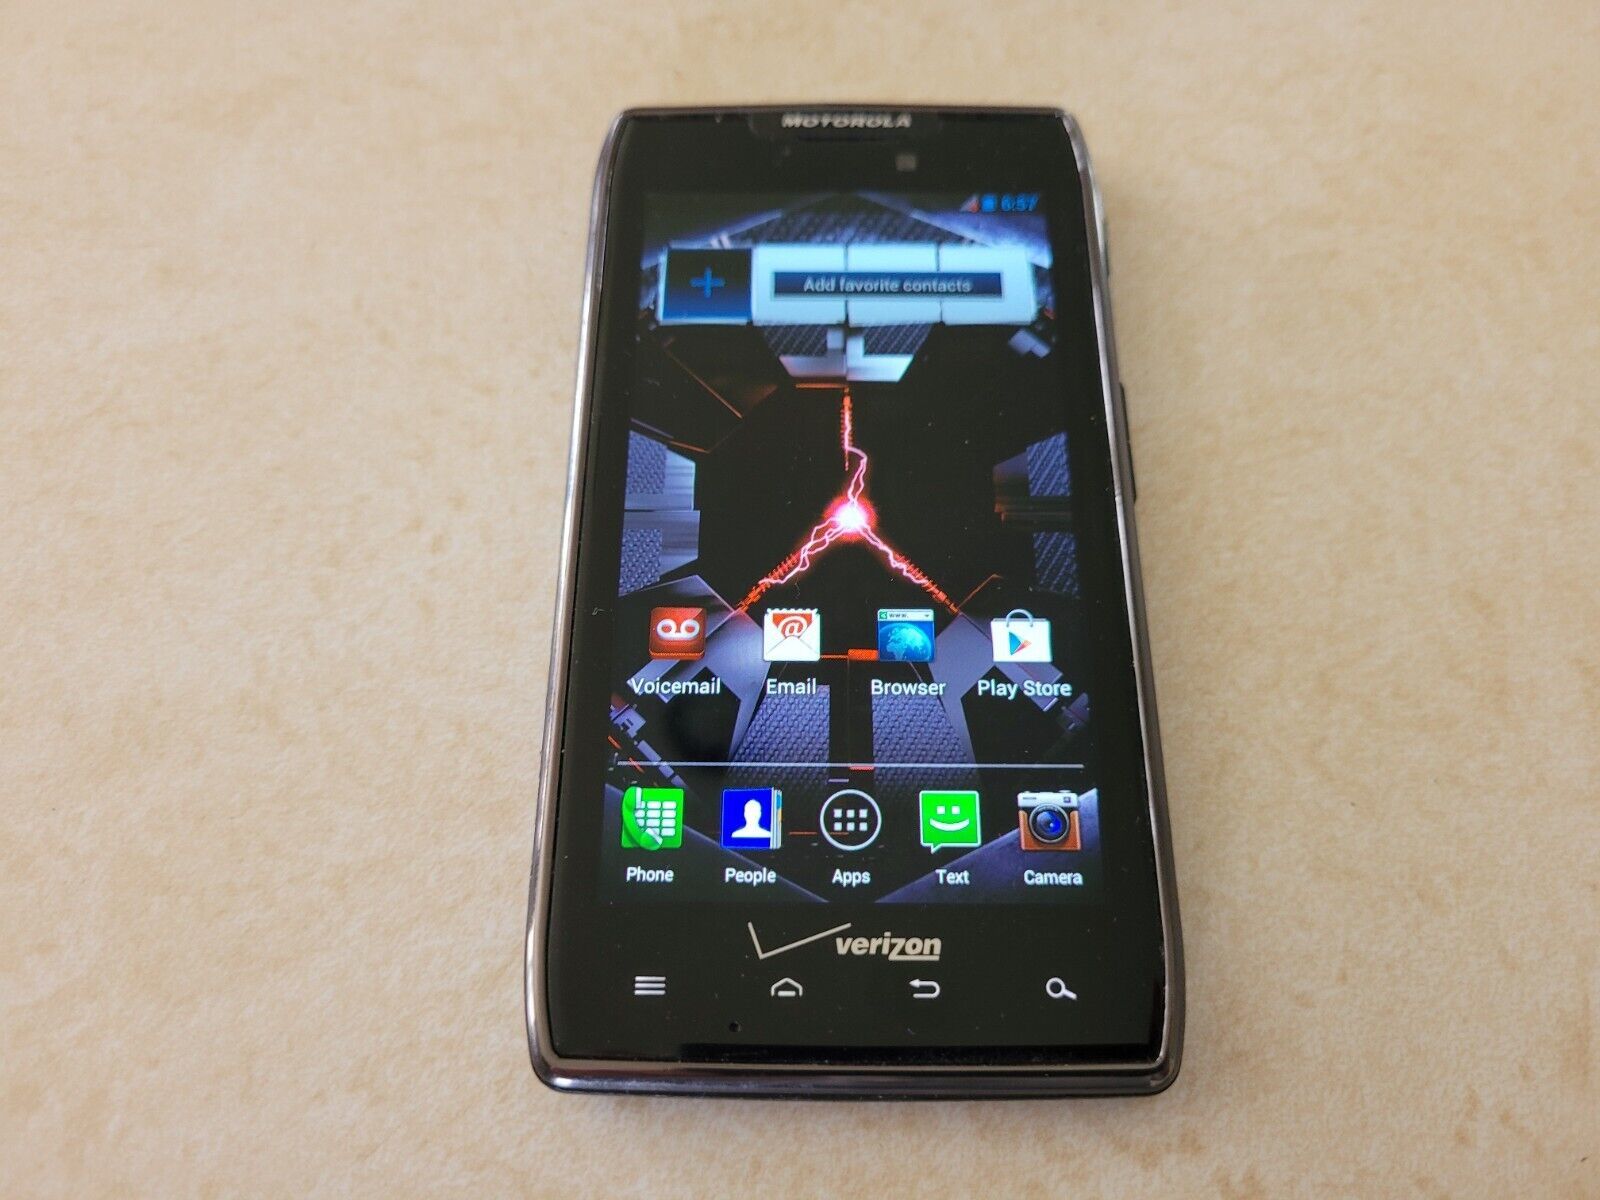 Motorola Droid RAZR MAXX XT912 HD 16GB Black (Verizon) Smartphone - $31.00